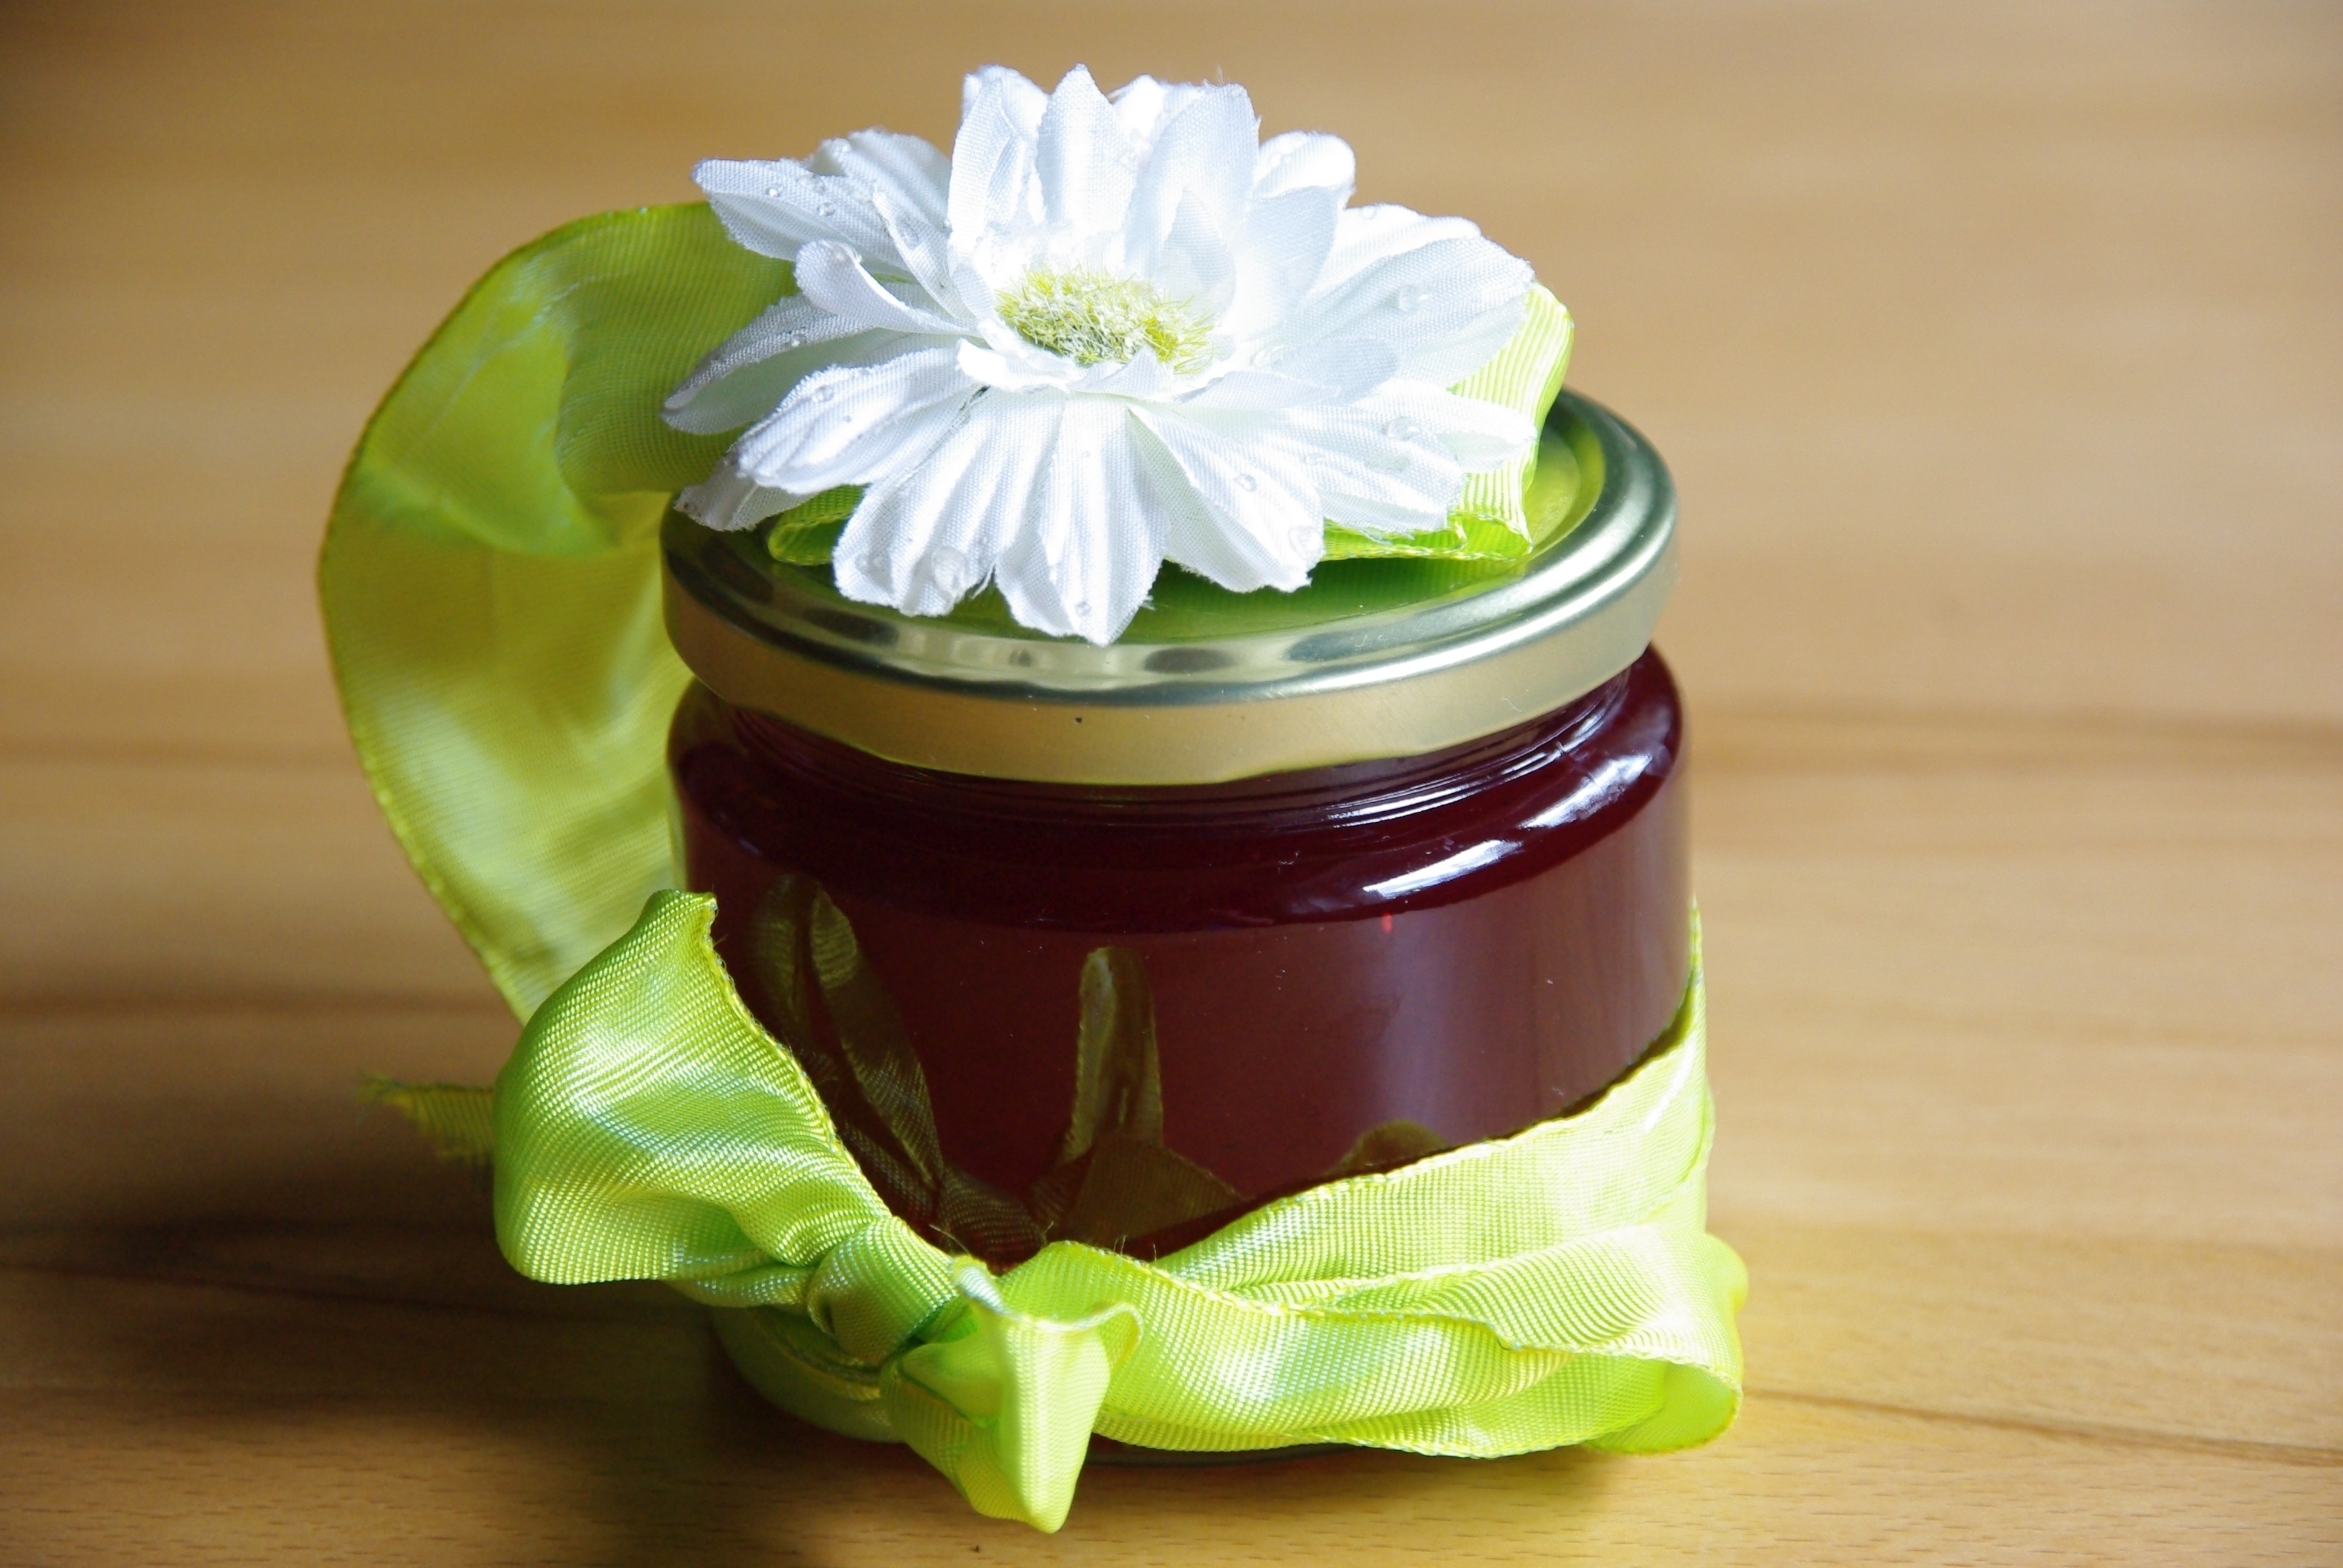 Johannisbeer-Stachelbeer Marmelade mit Vanille, Zimt und Nelken